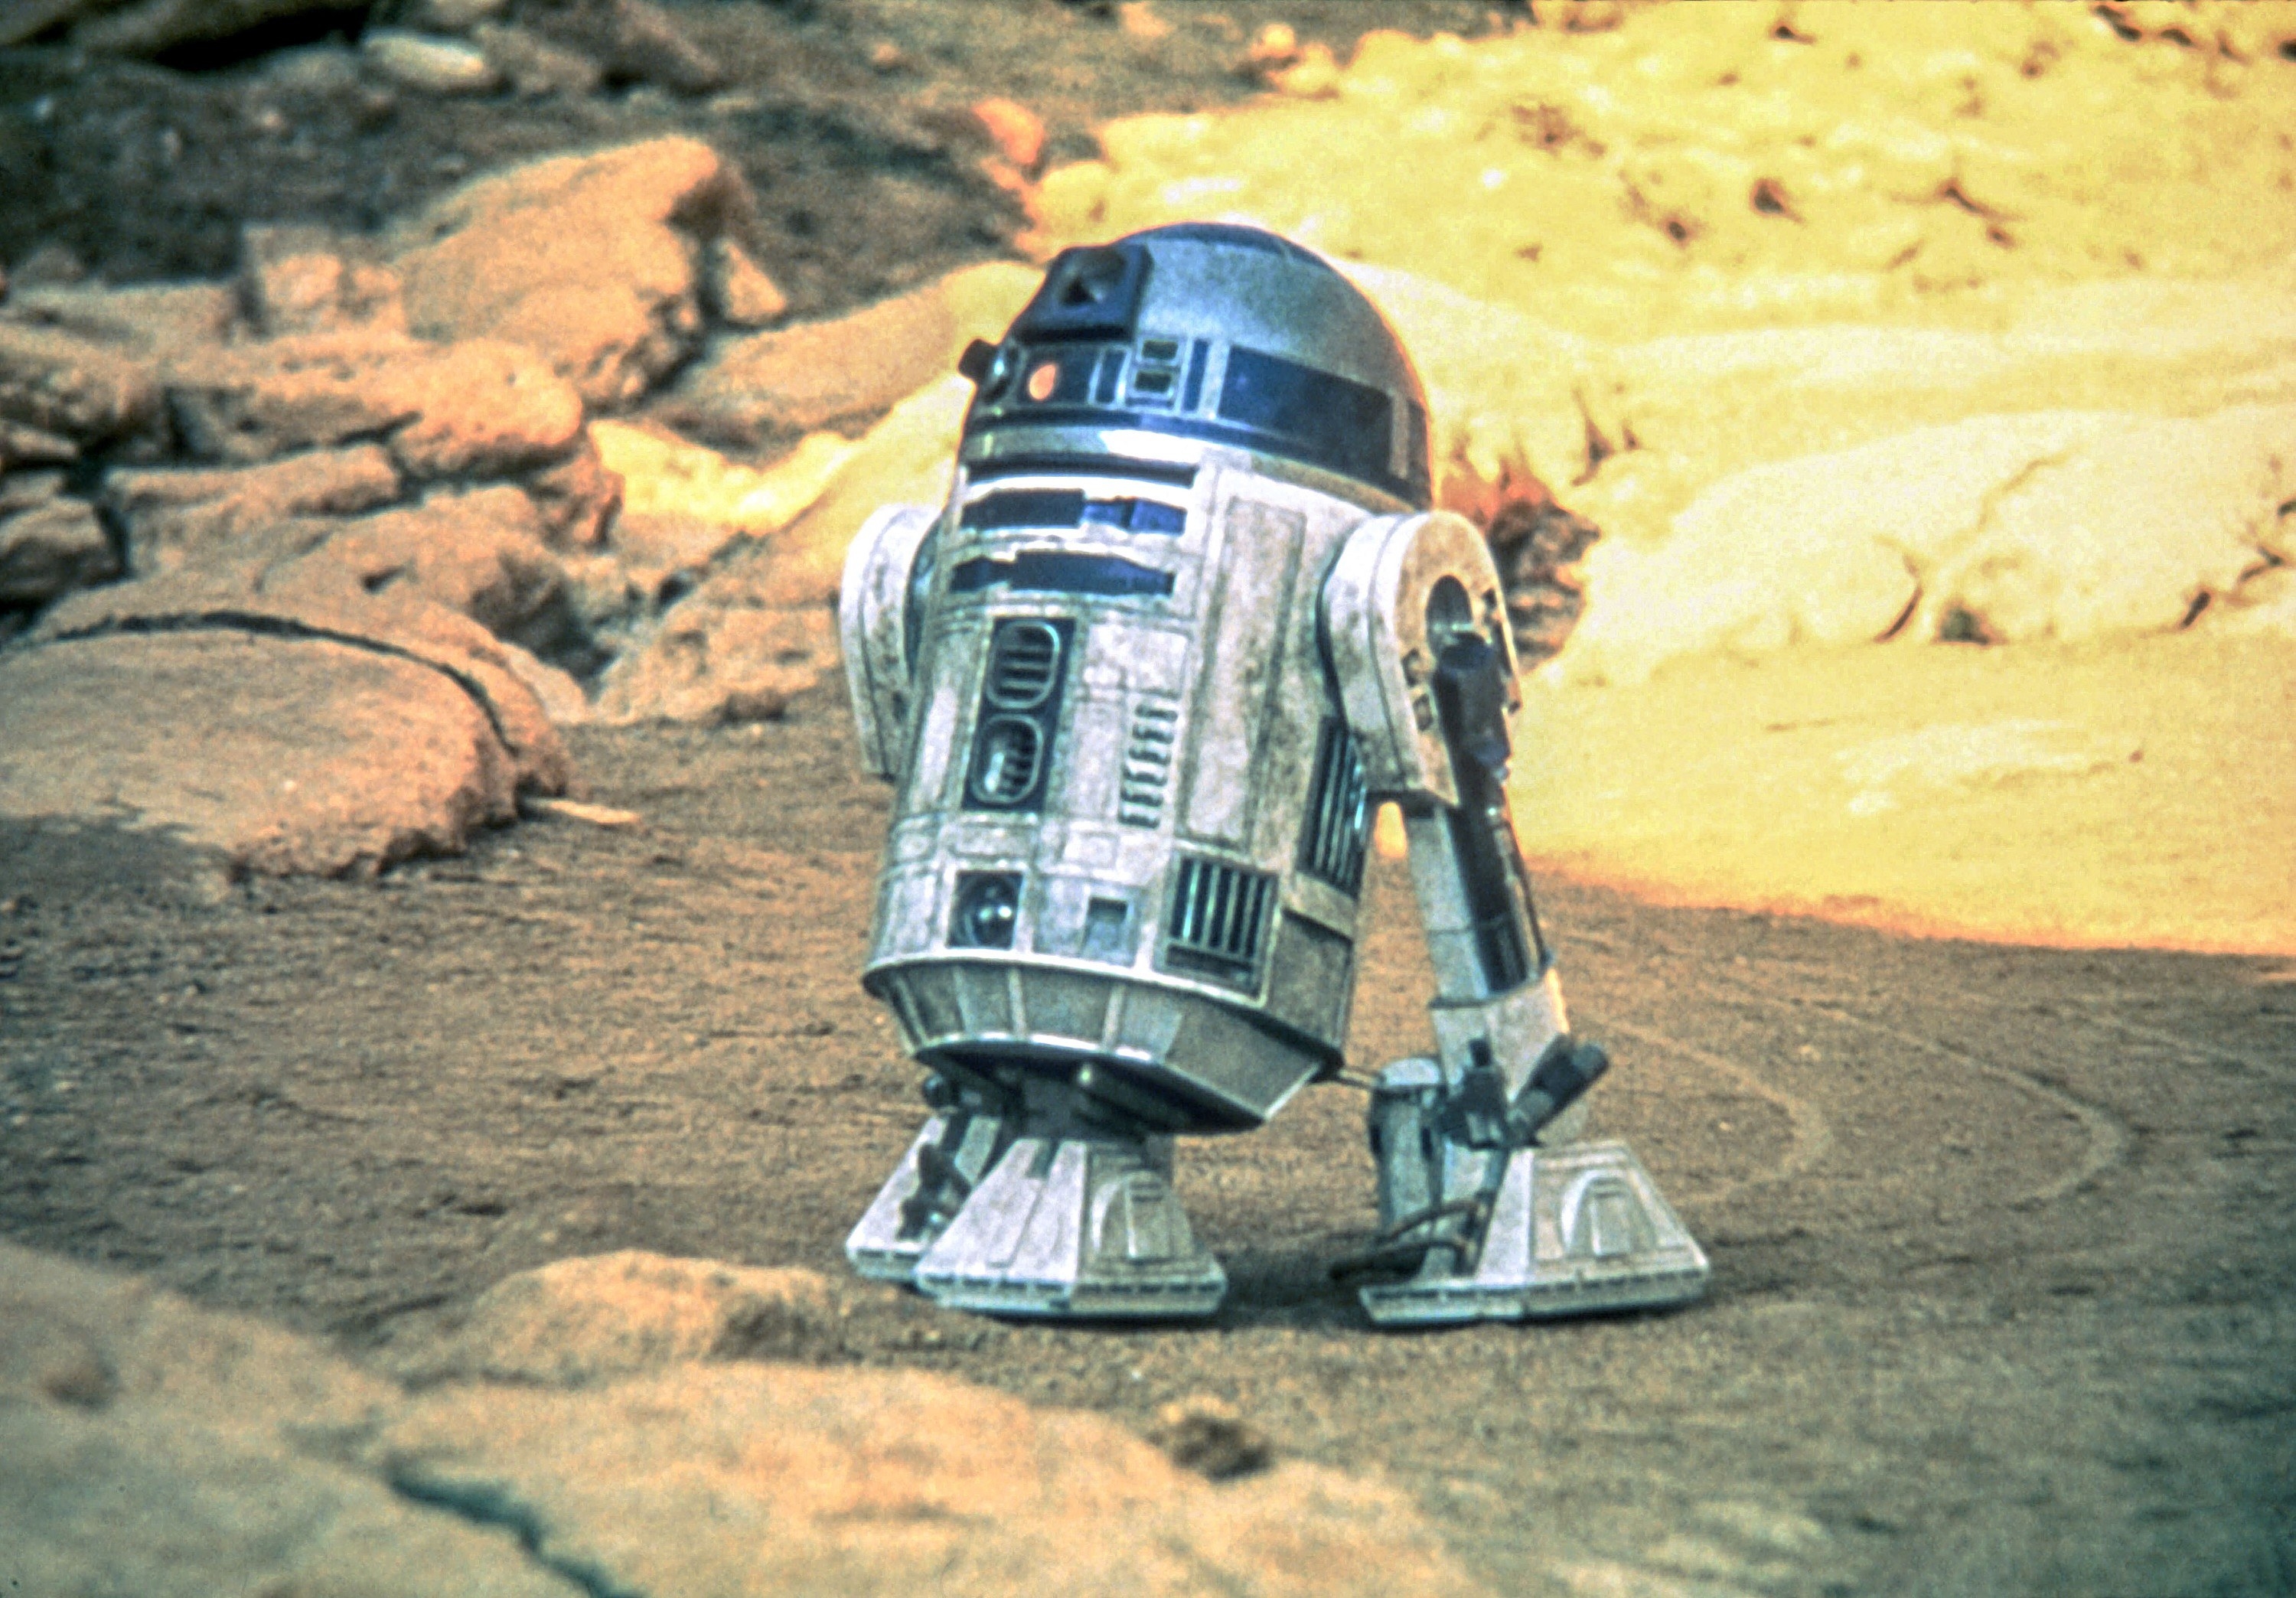 R2-D2 in a desert scene